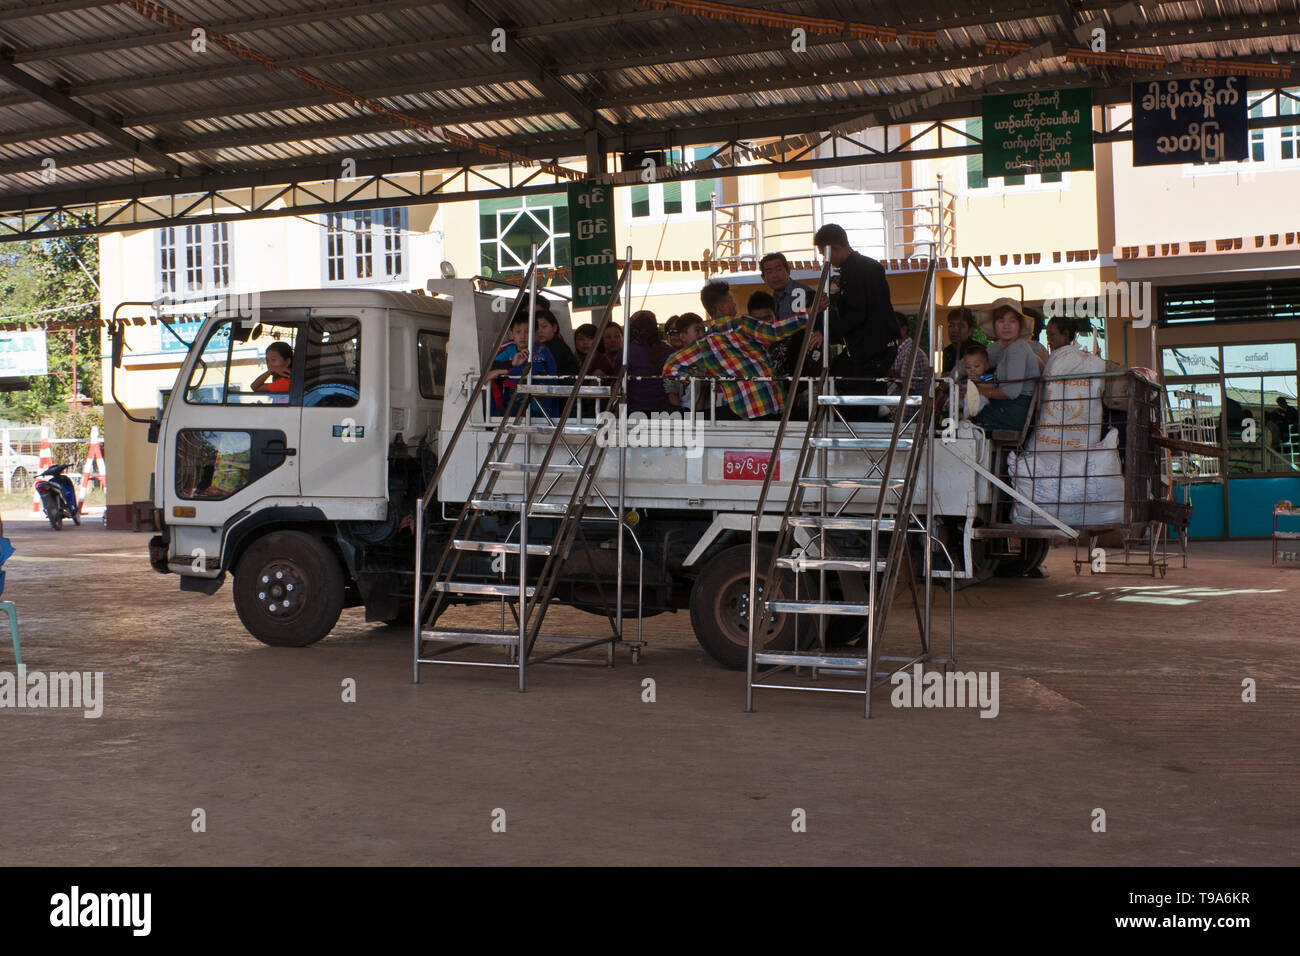 Hay una estación de autobuses en Myanmar. La carretilla sirve como un vehículo de pasajeros Foto de stock